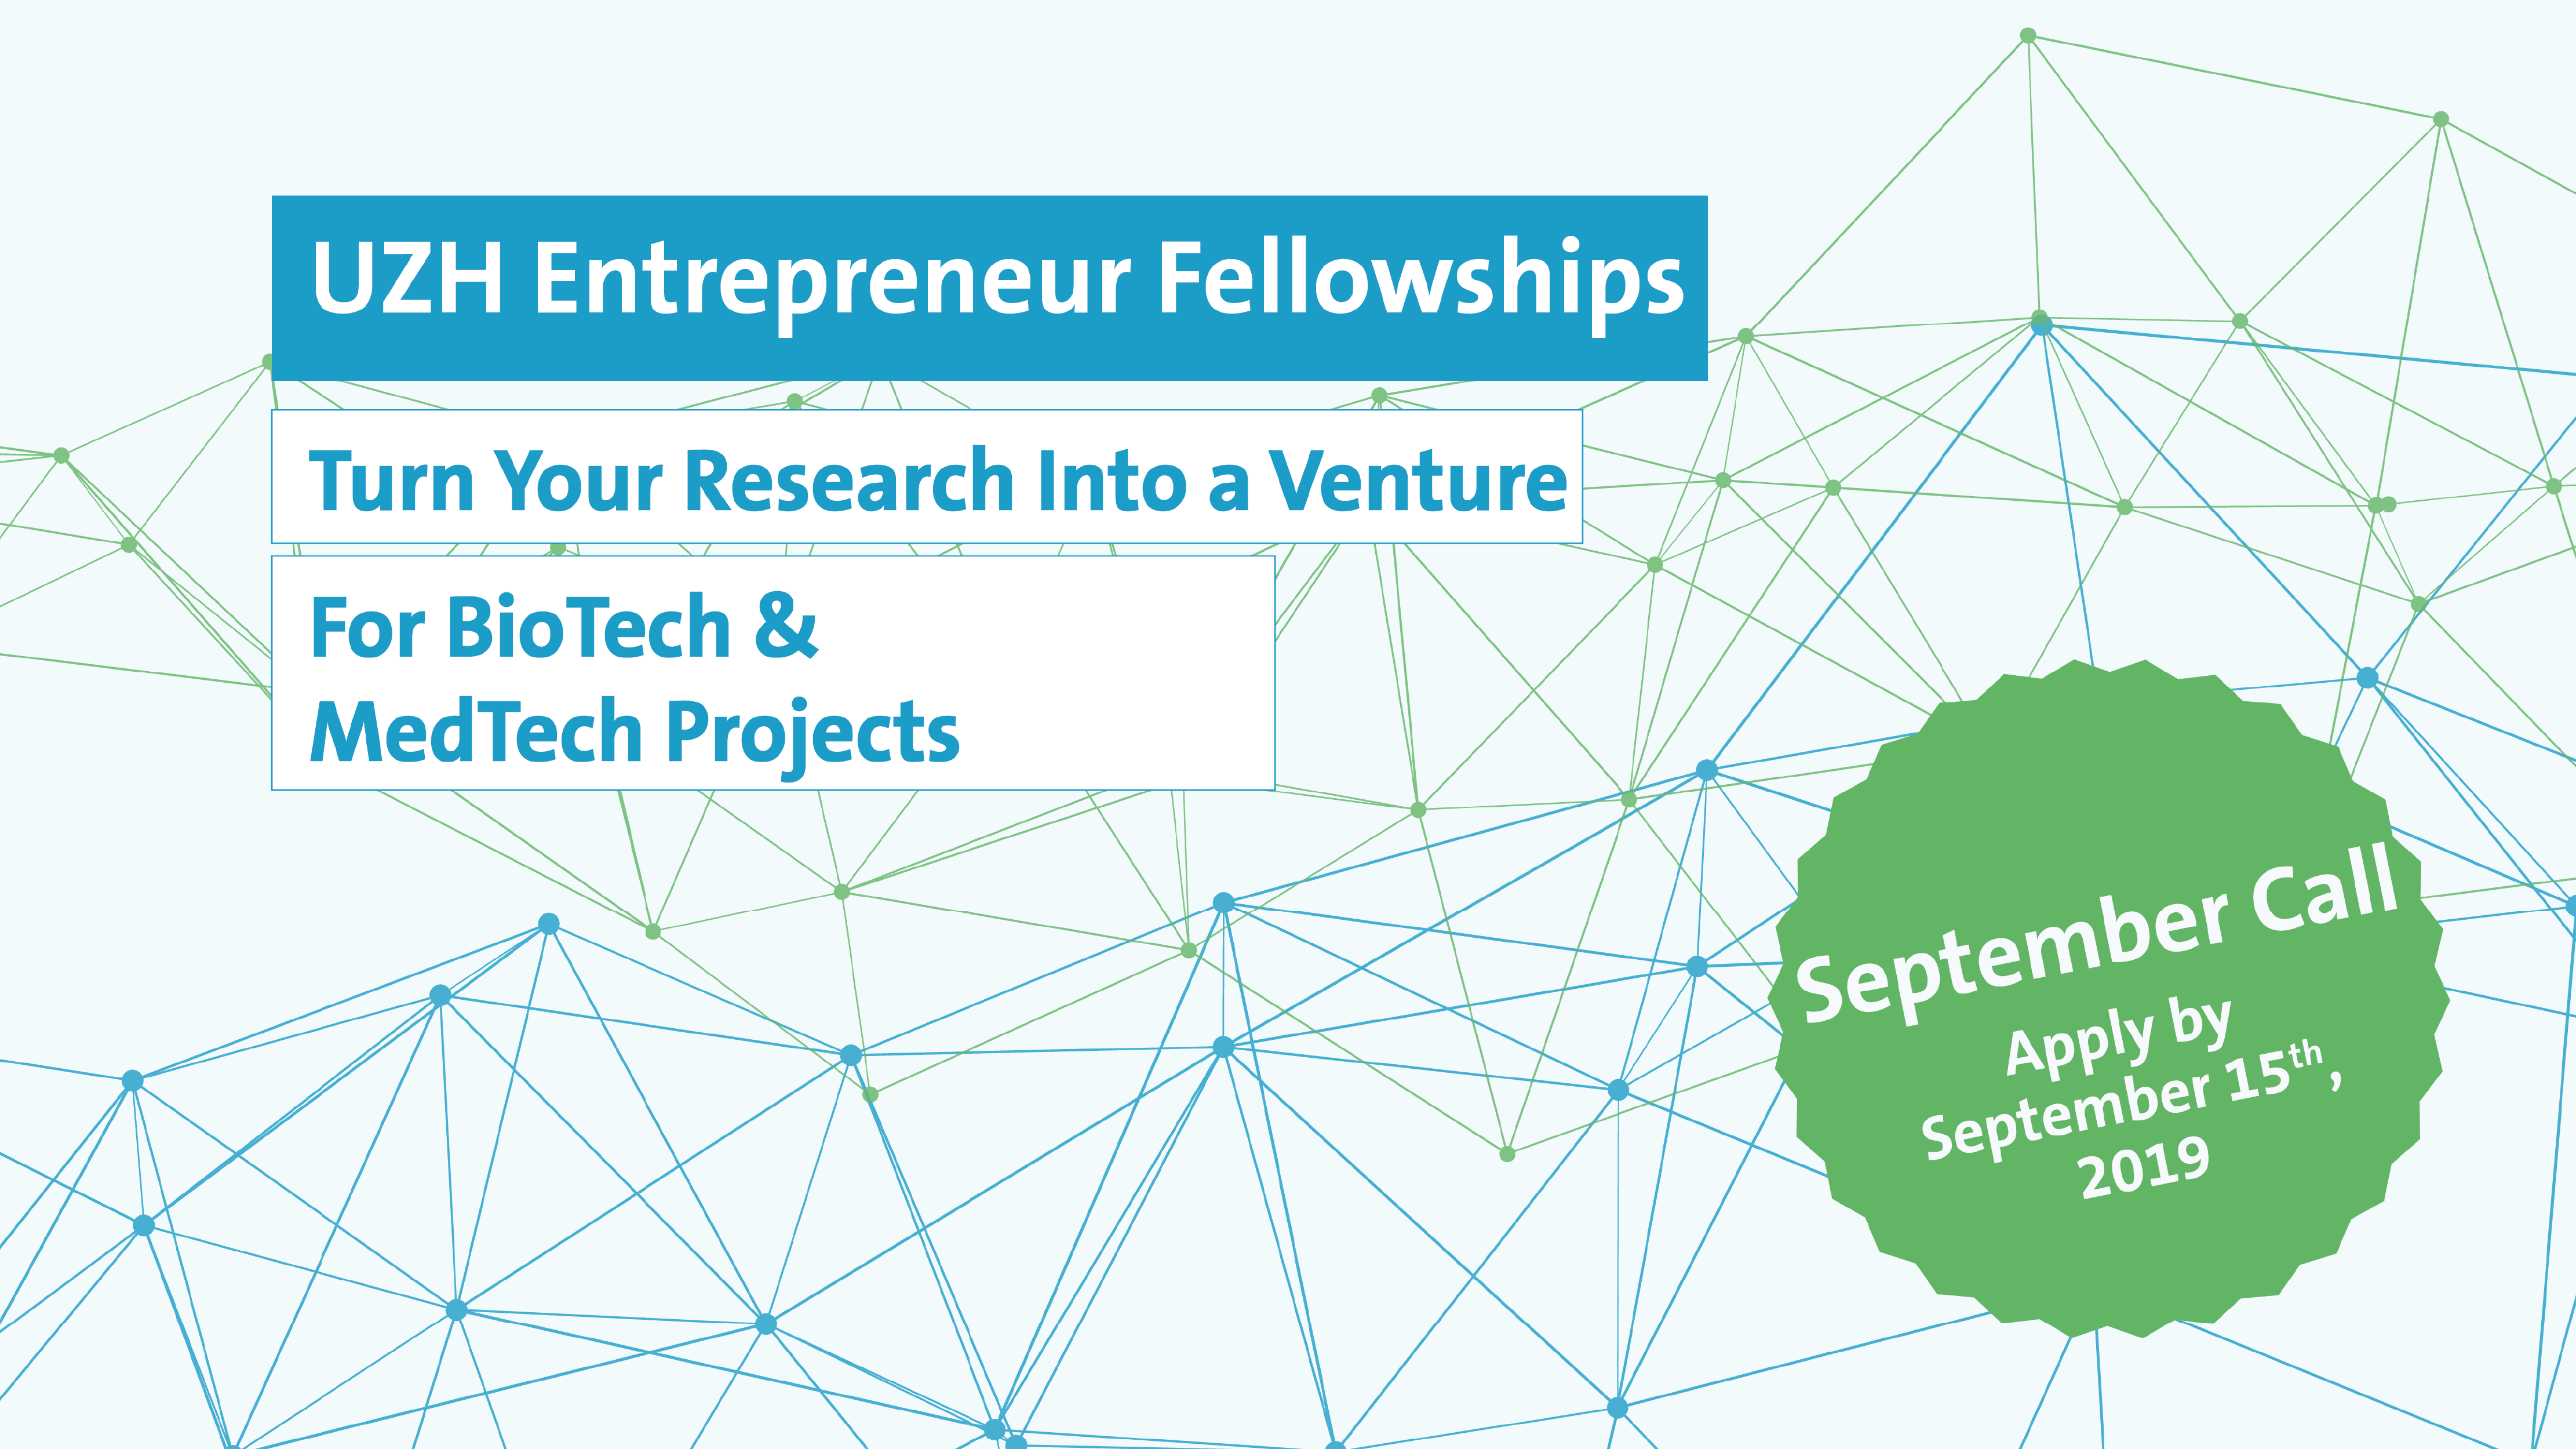 UZH Entrepreneur Fellowships Call September